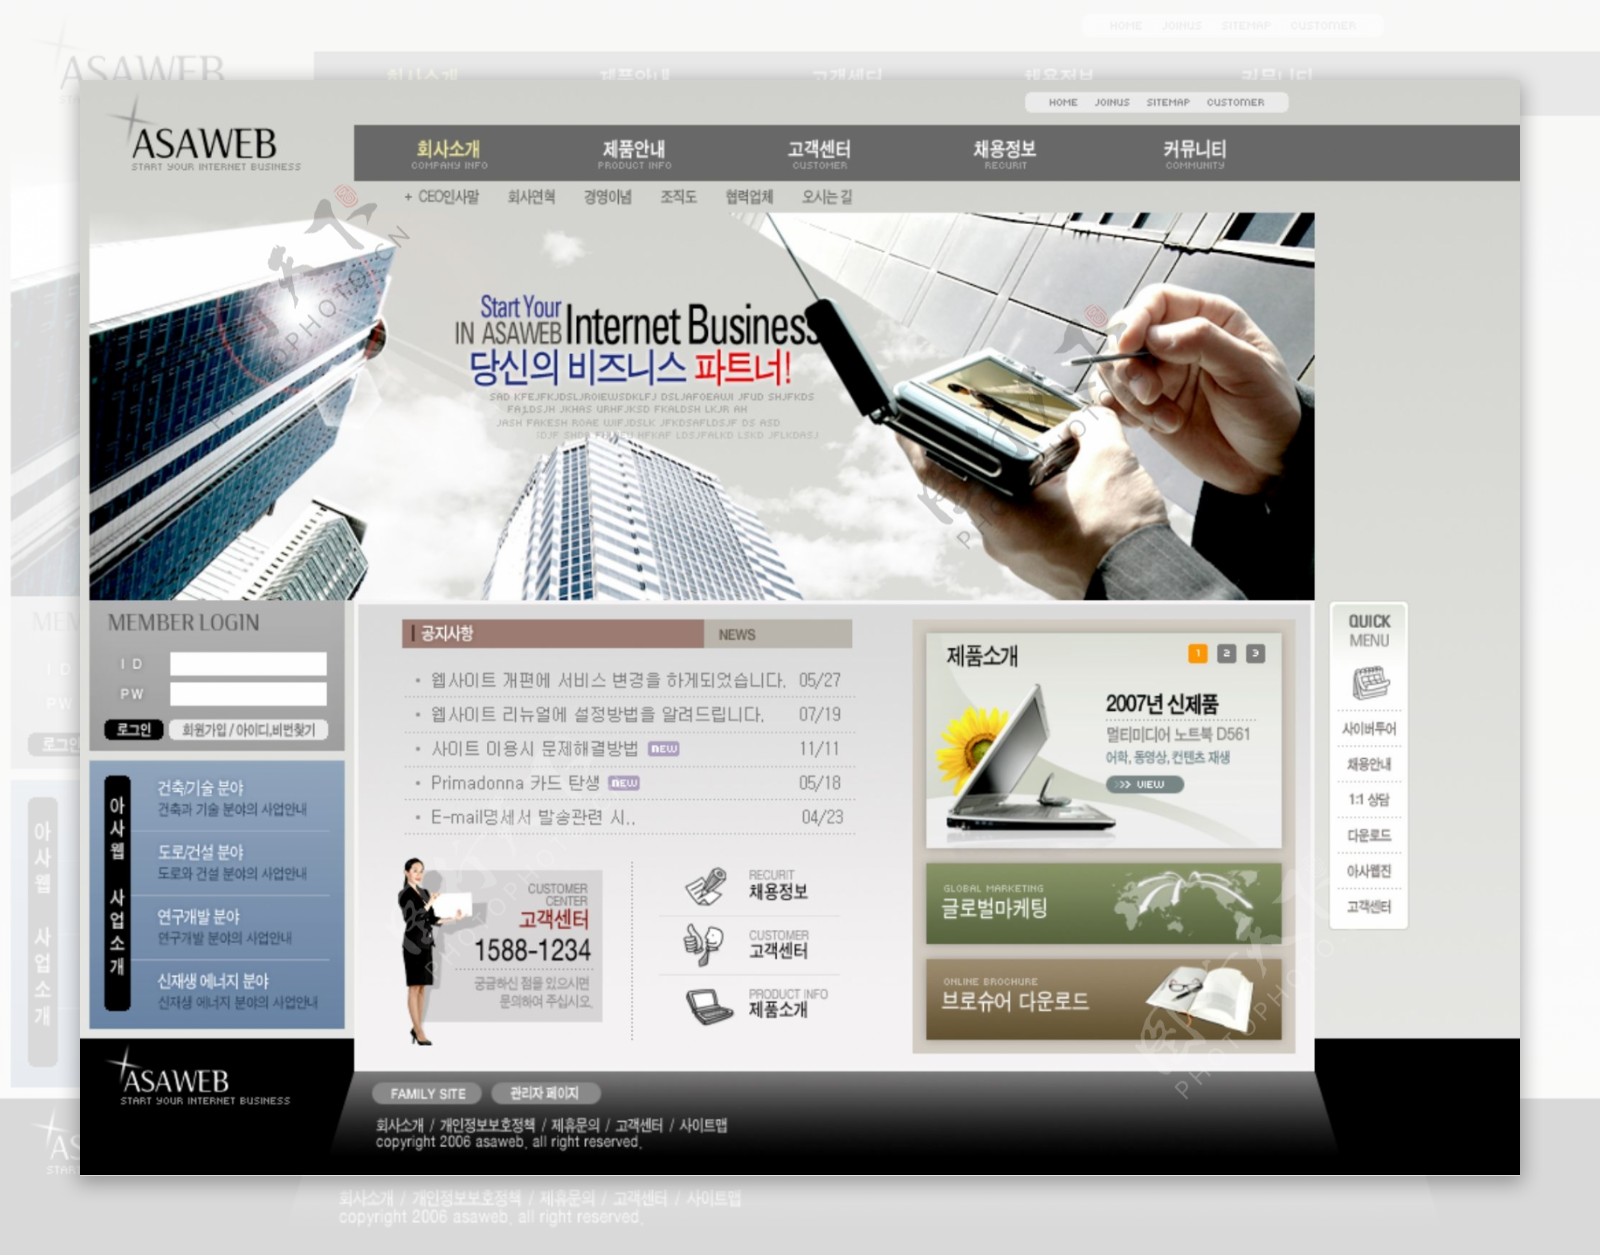 企业产品会员服务网页模板